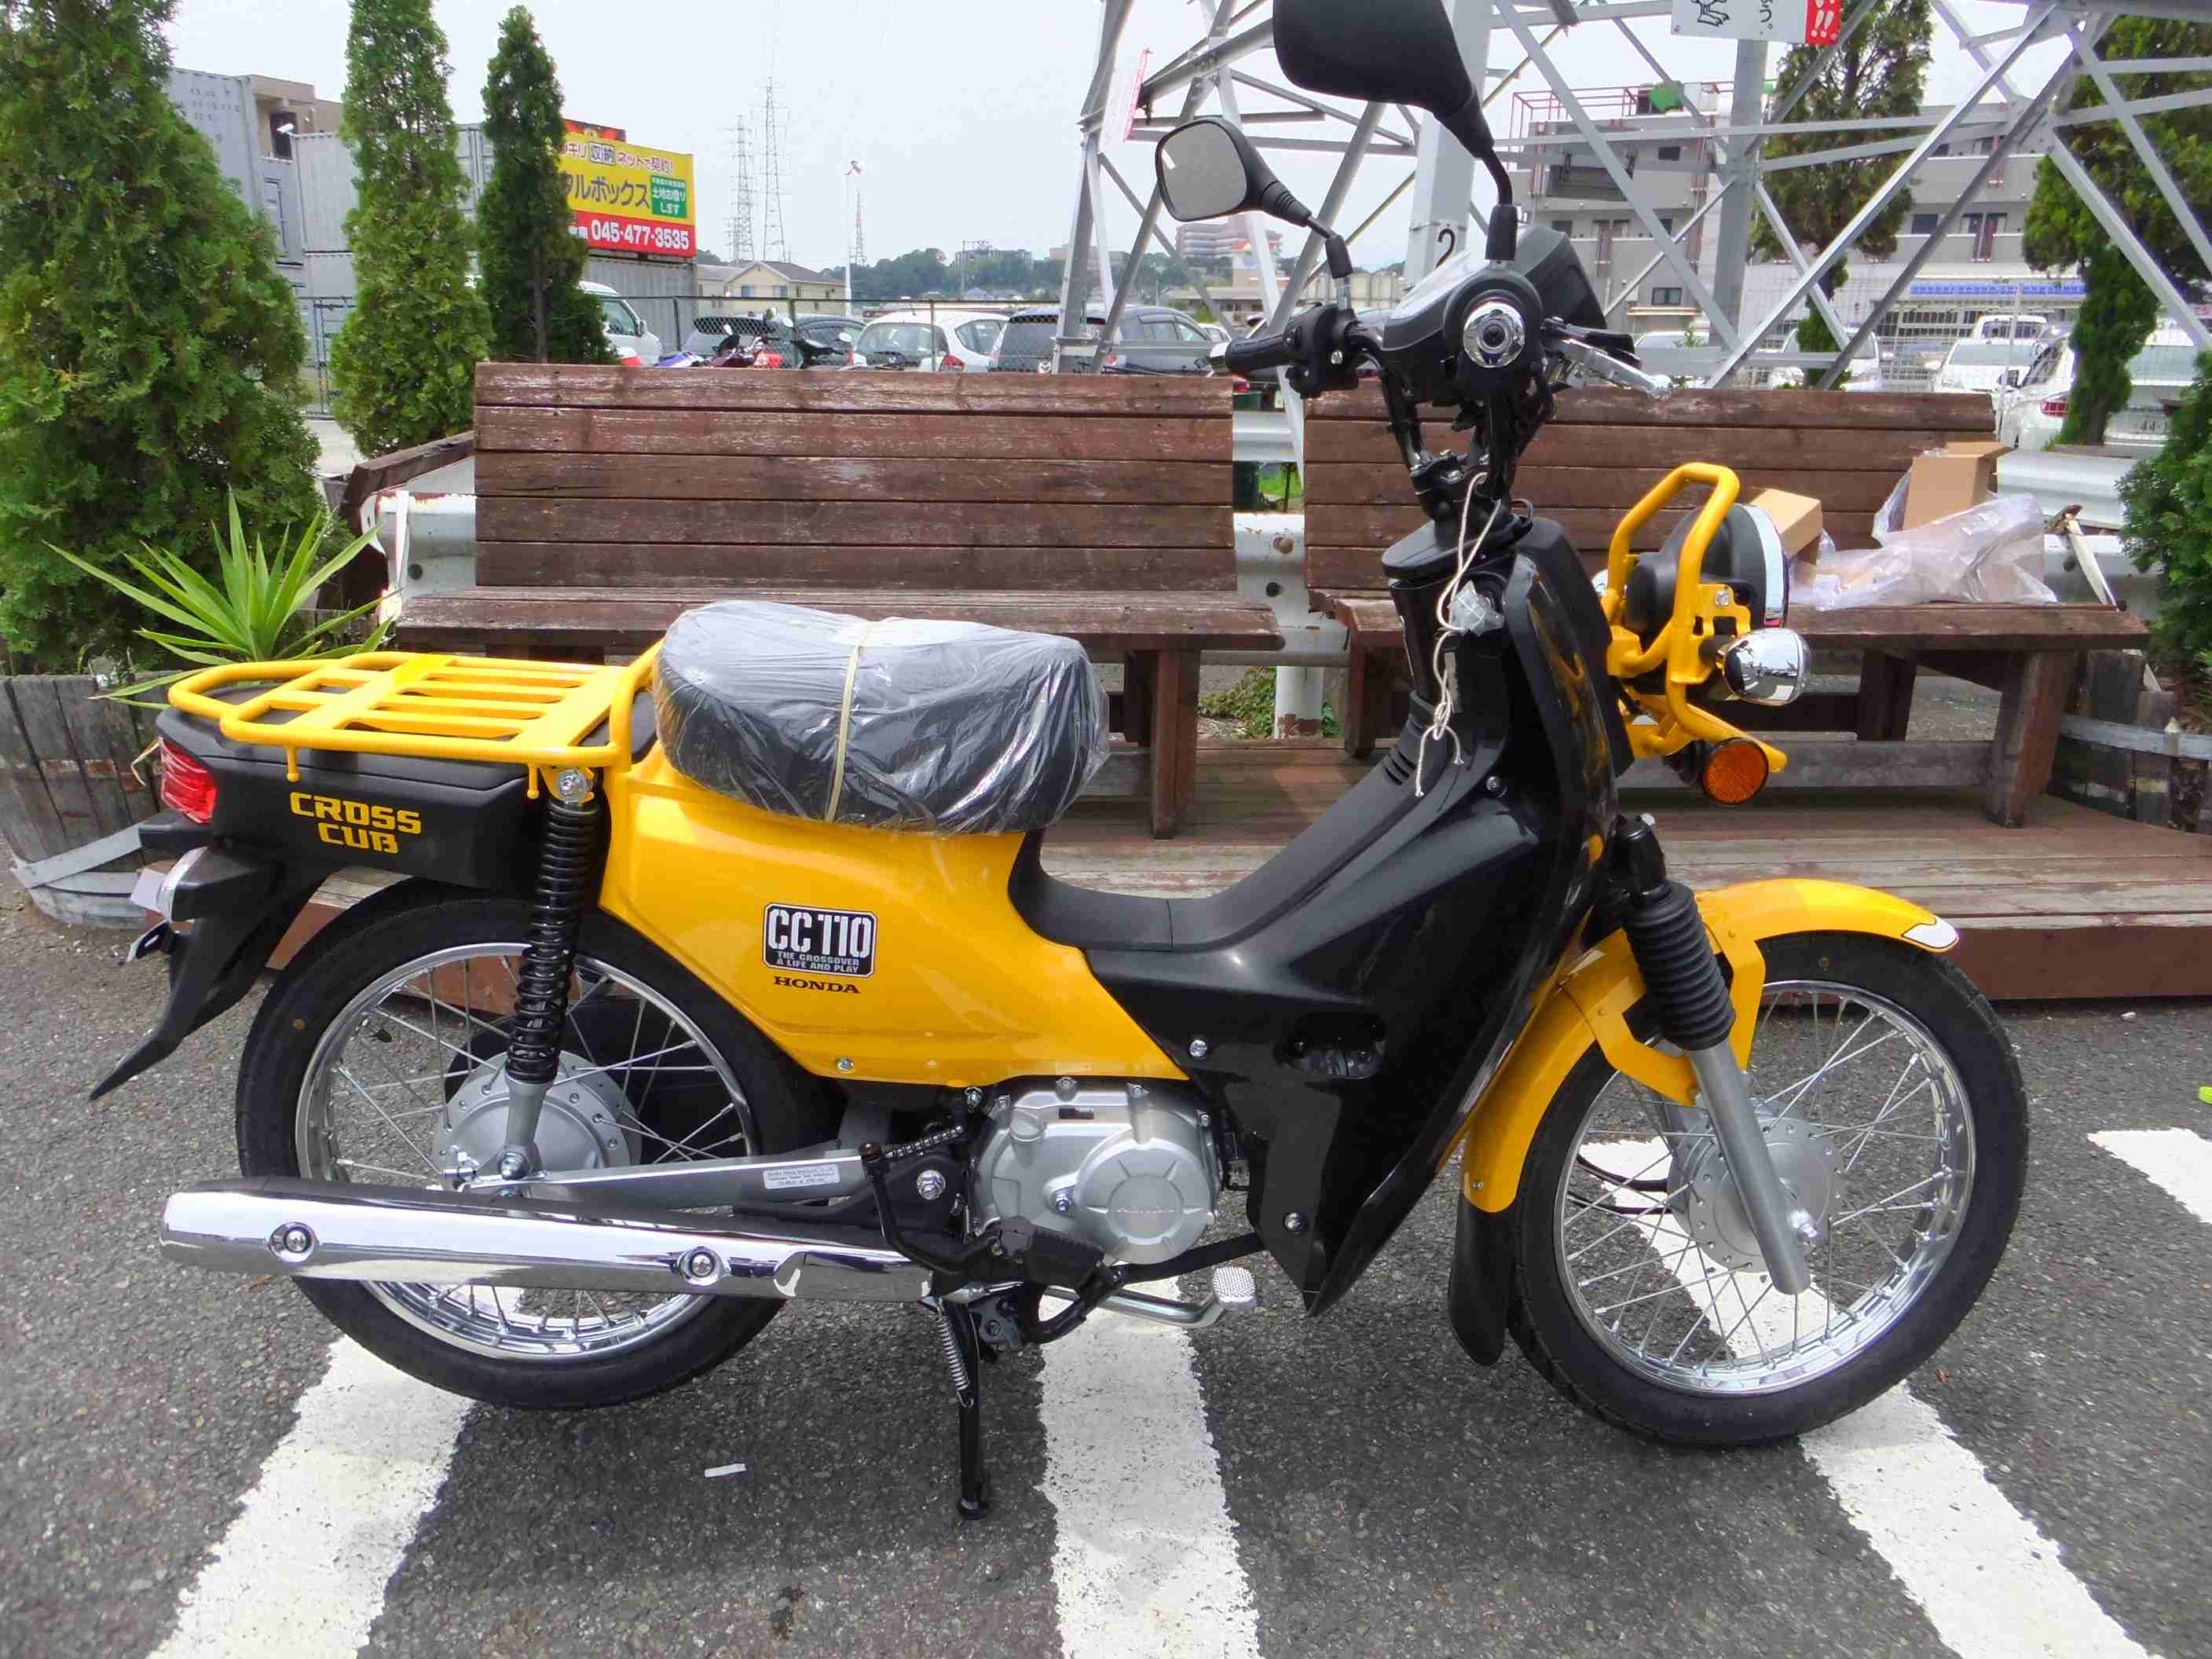 旧型クロスカブ在庫ございます 最新情報 U Media ユーメディア 中古 バイク 新車バイク探しの決定版 神奈川 東京でバイク探すならユーメディア